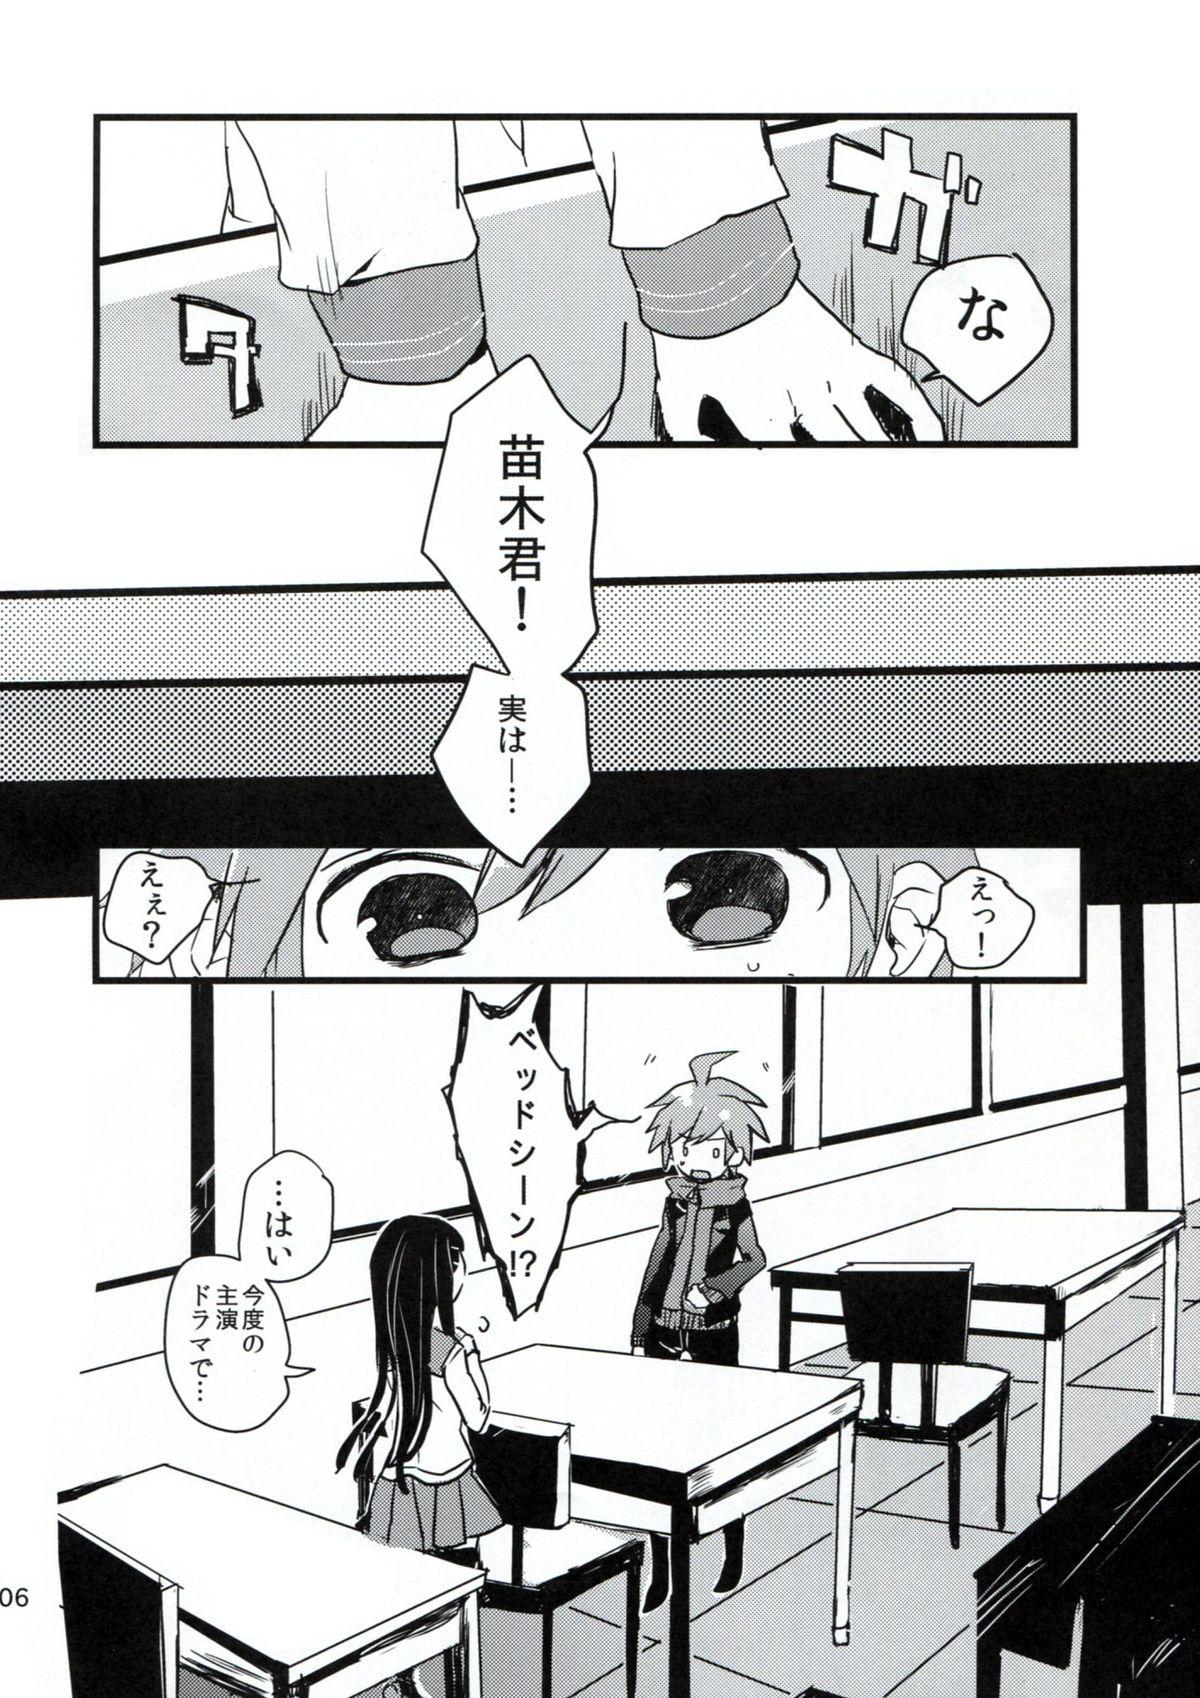 Naegi to Maizono san ga Tsukiatteru Zentei no Manga 4